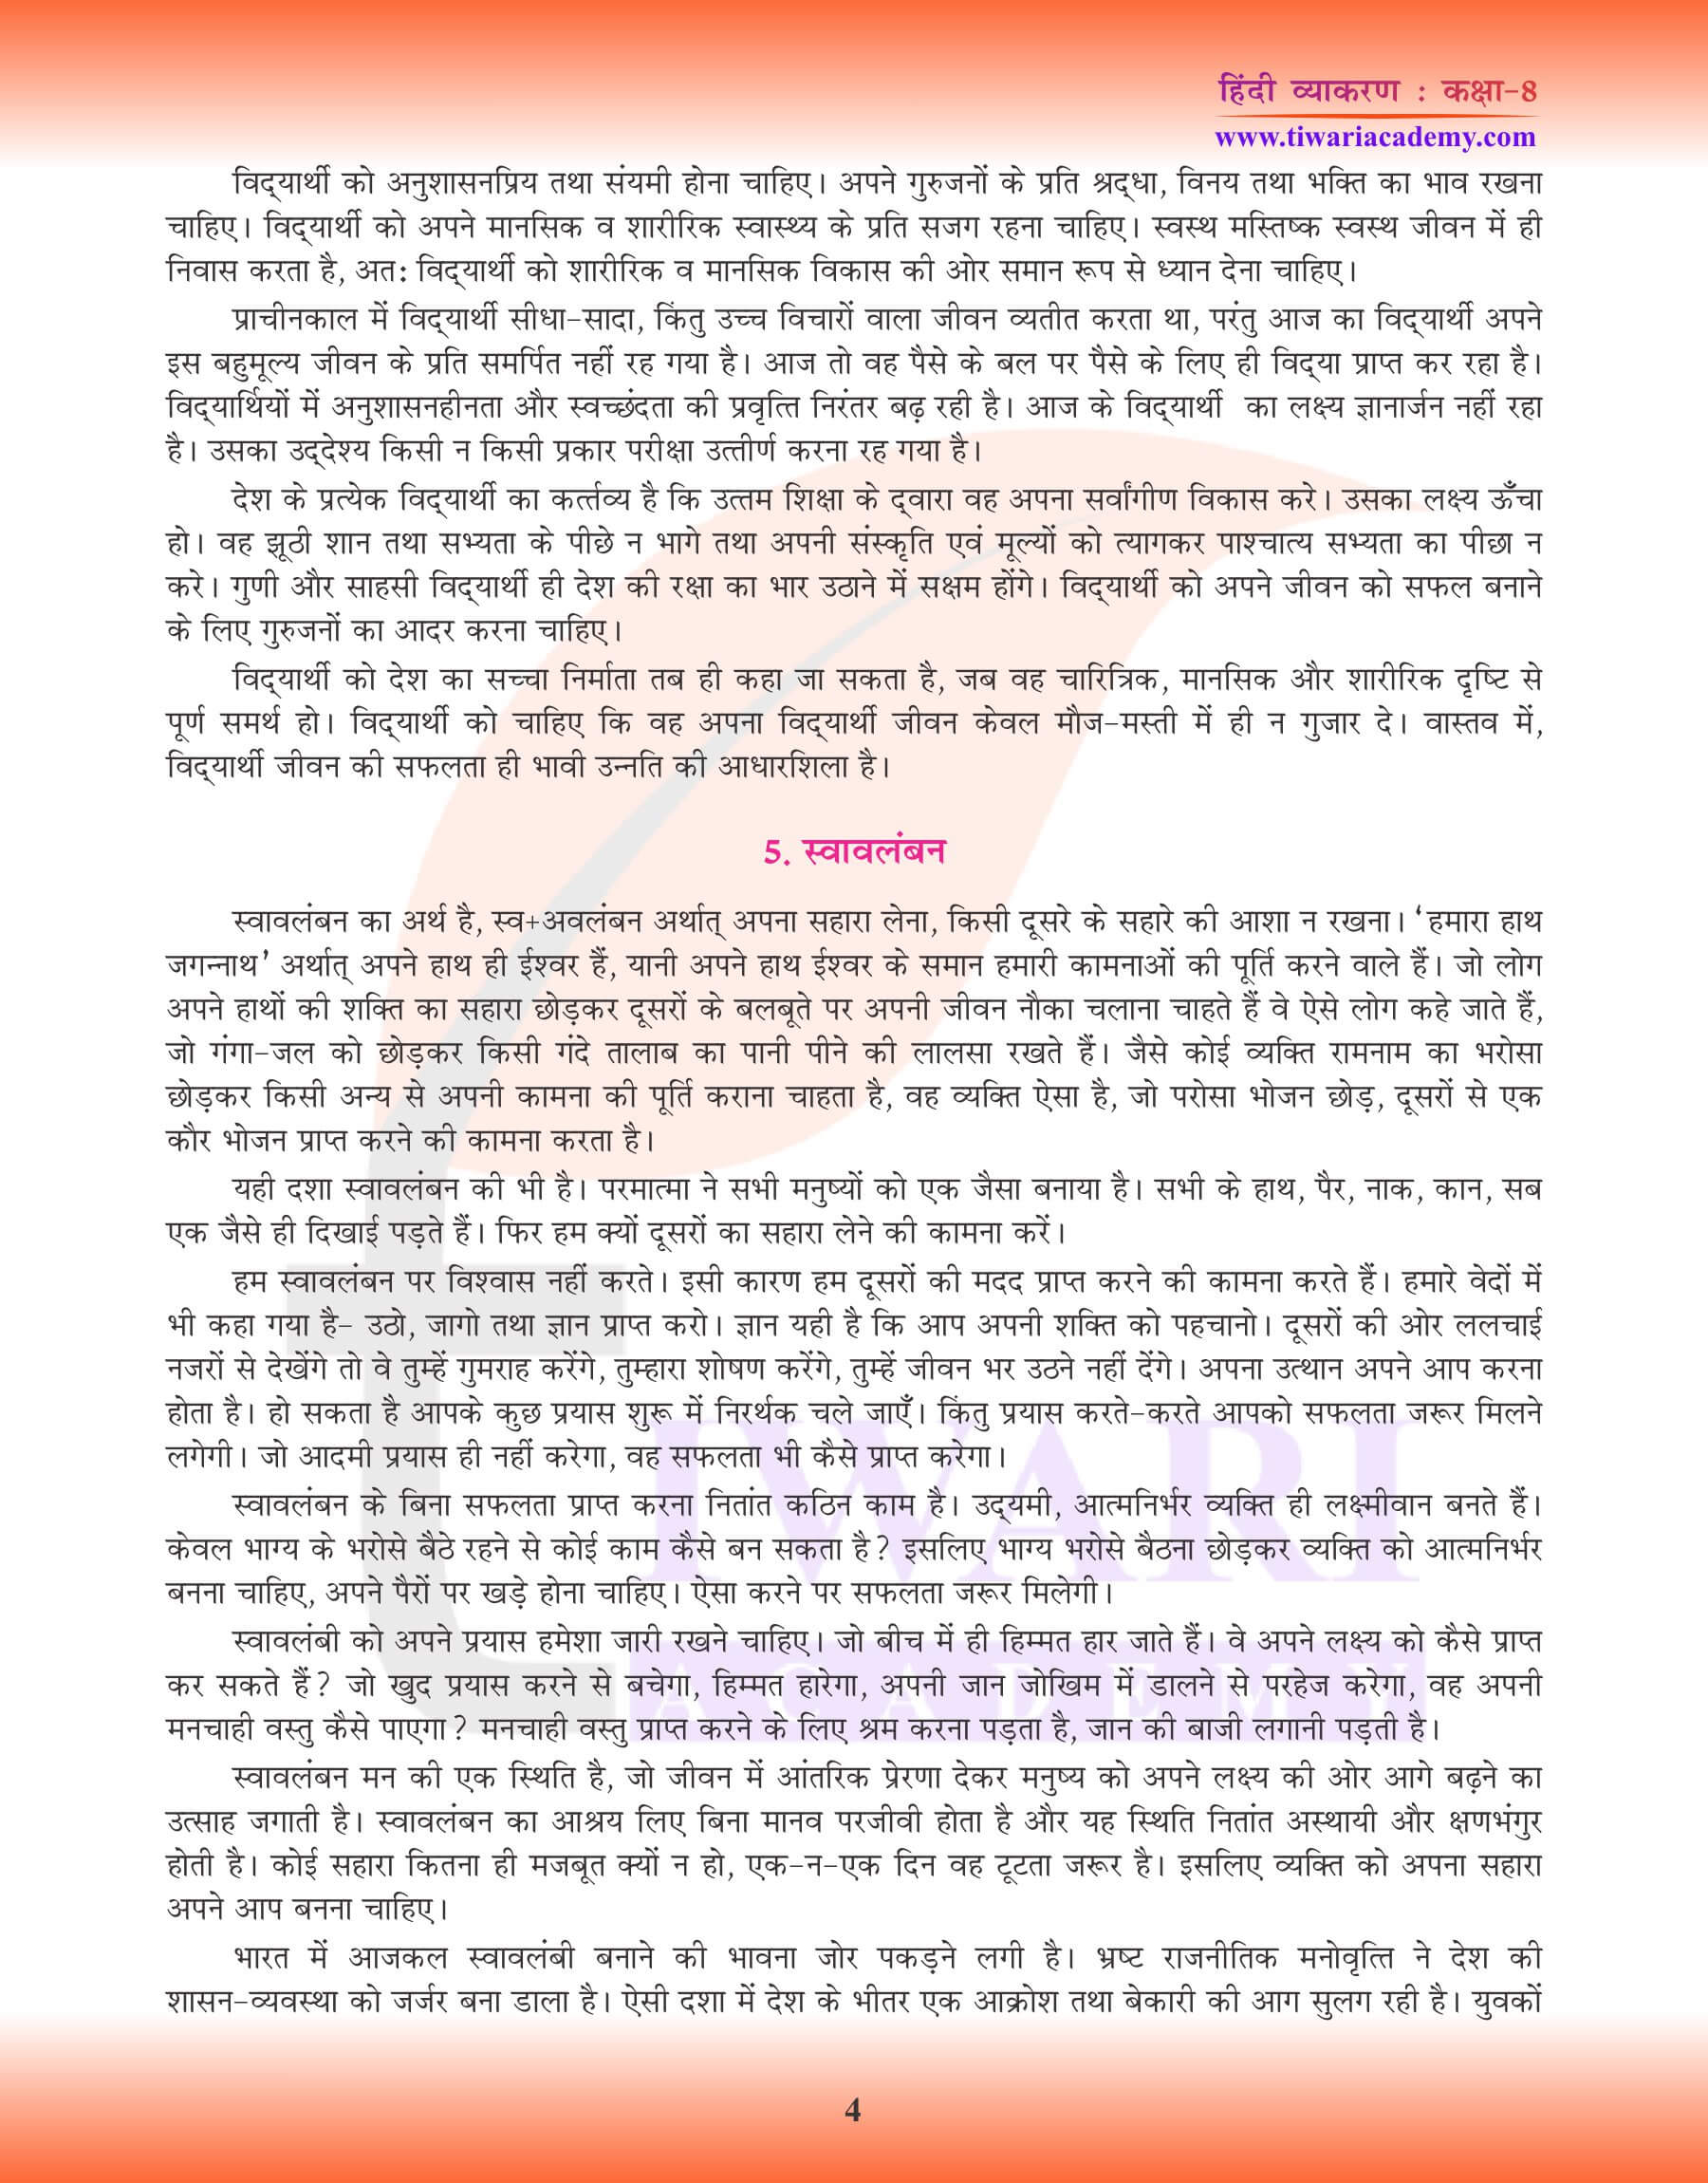 कक्षा 8 हिंदी व्याकरण में निबंध लेखन सैंपल